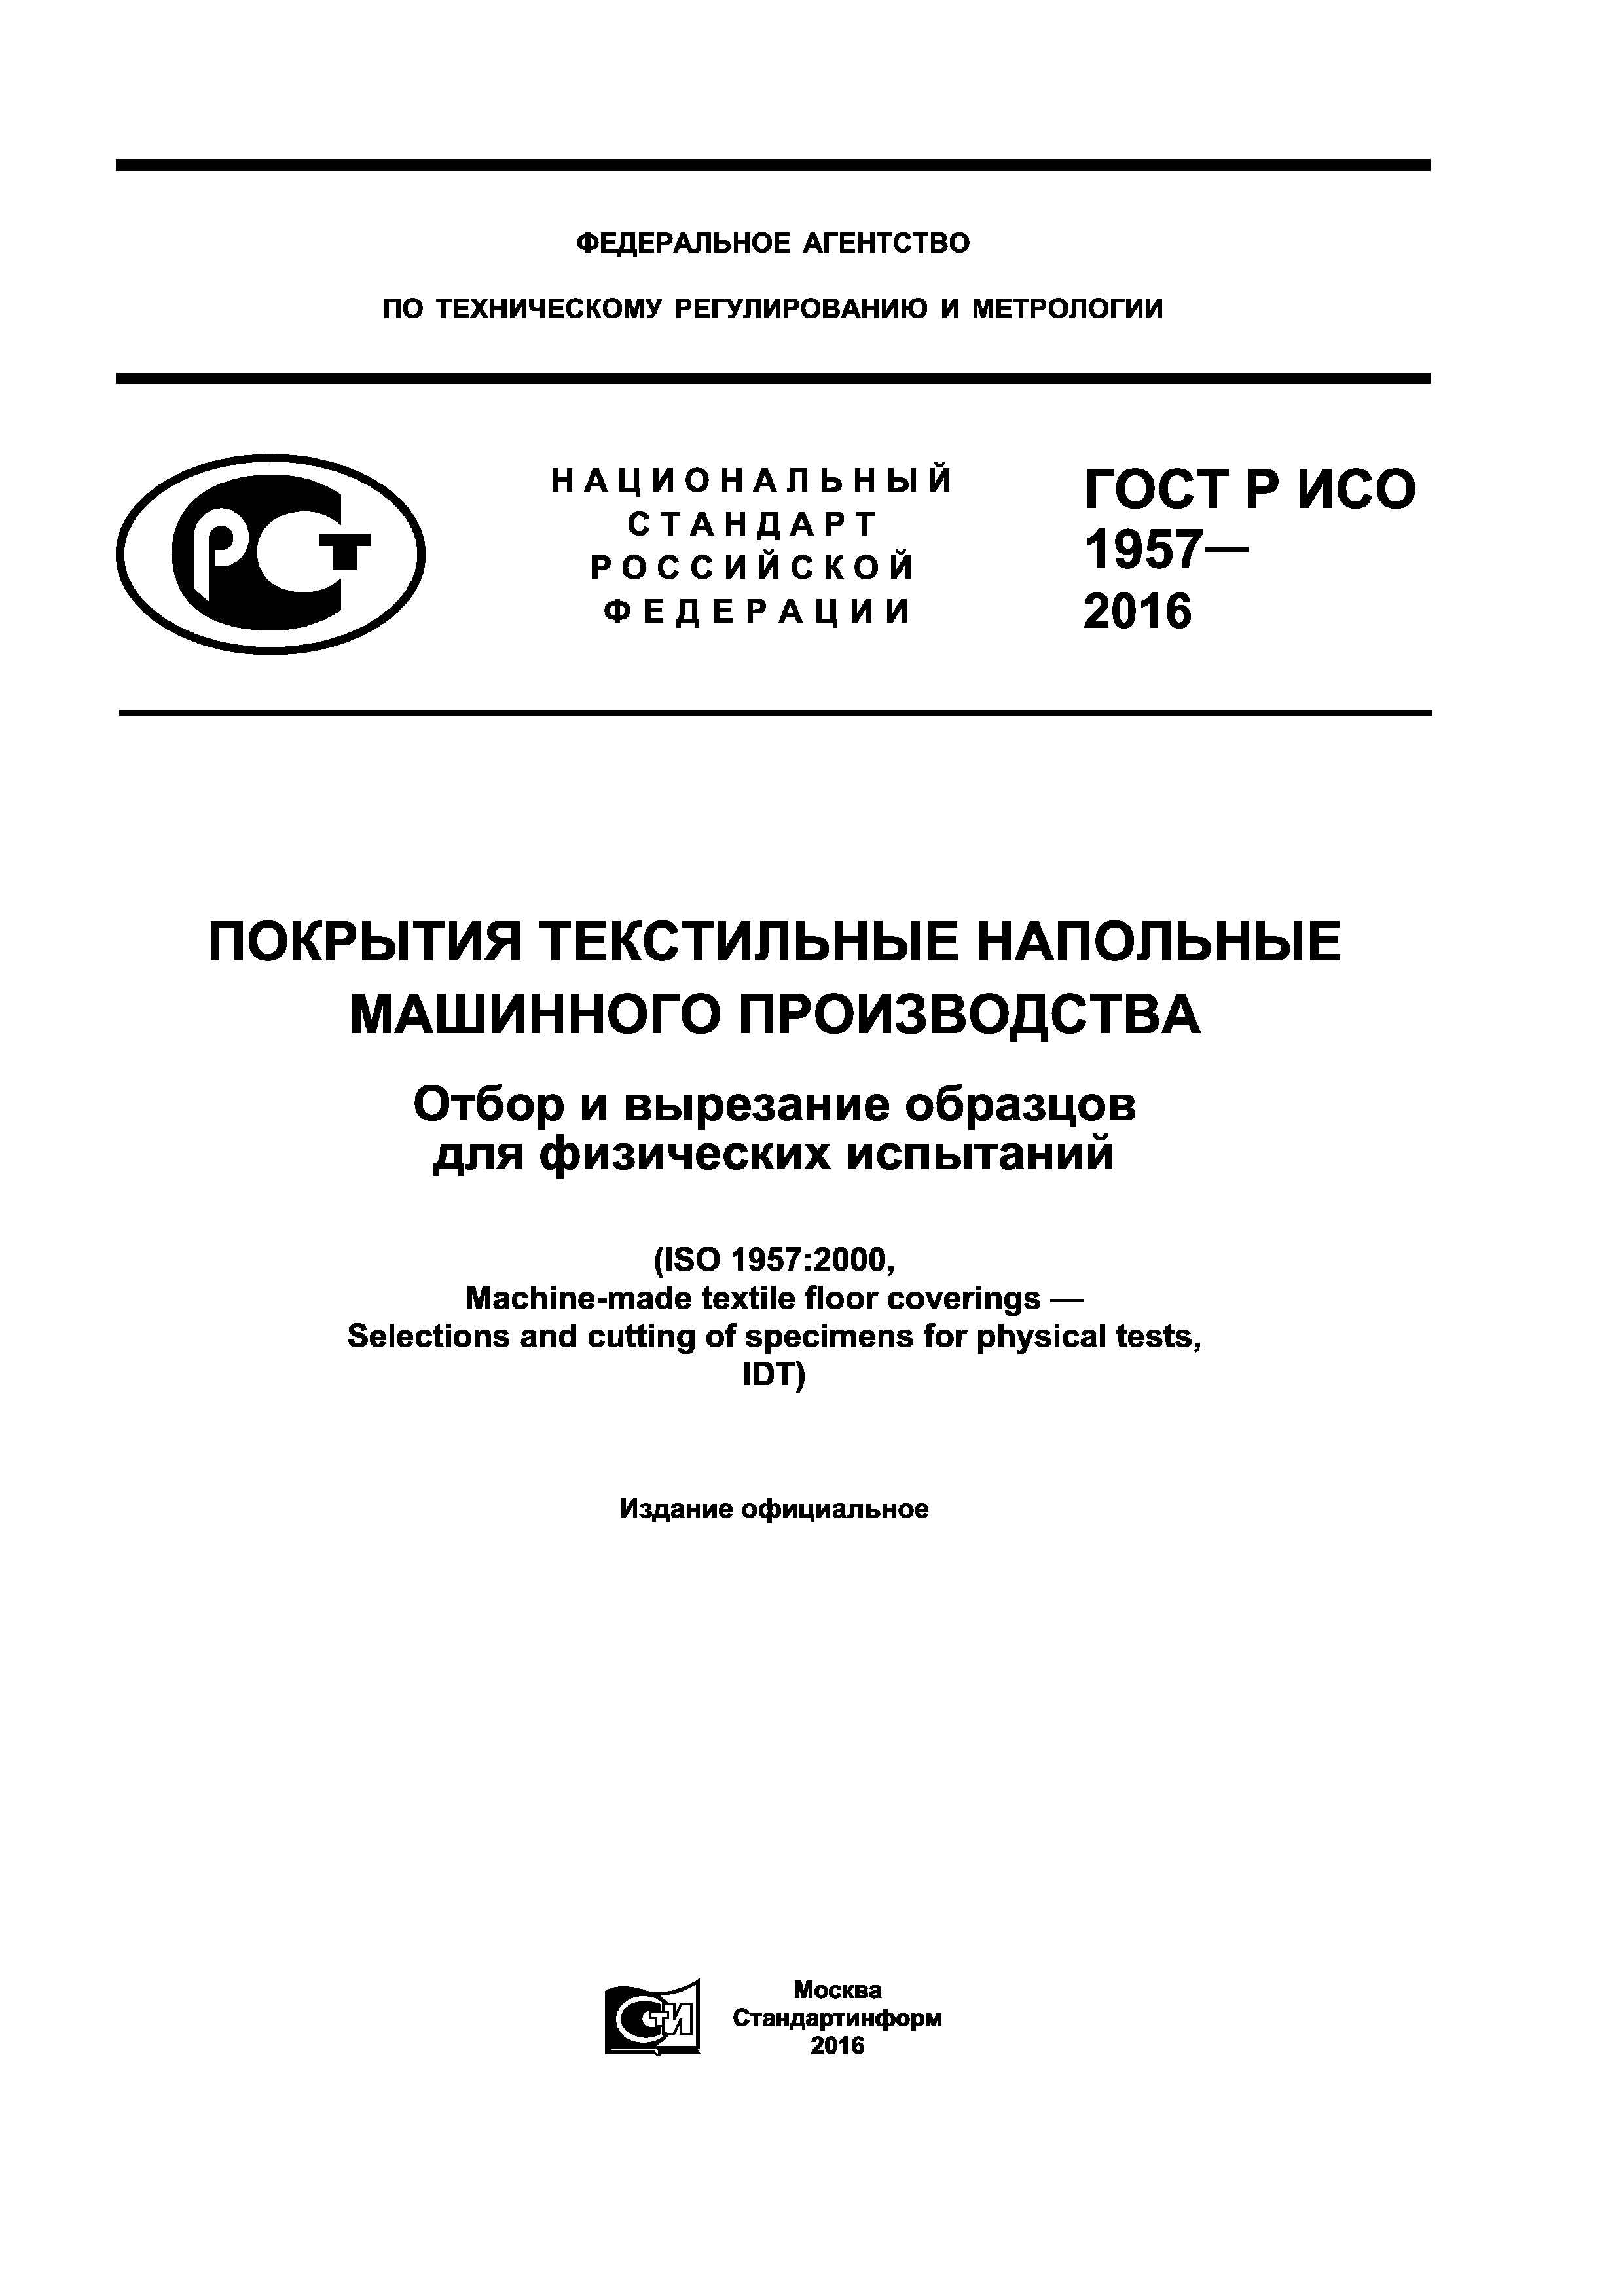 ГОСТ Р ИСО 1957-2016